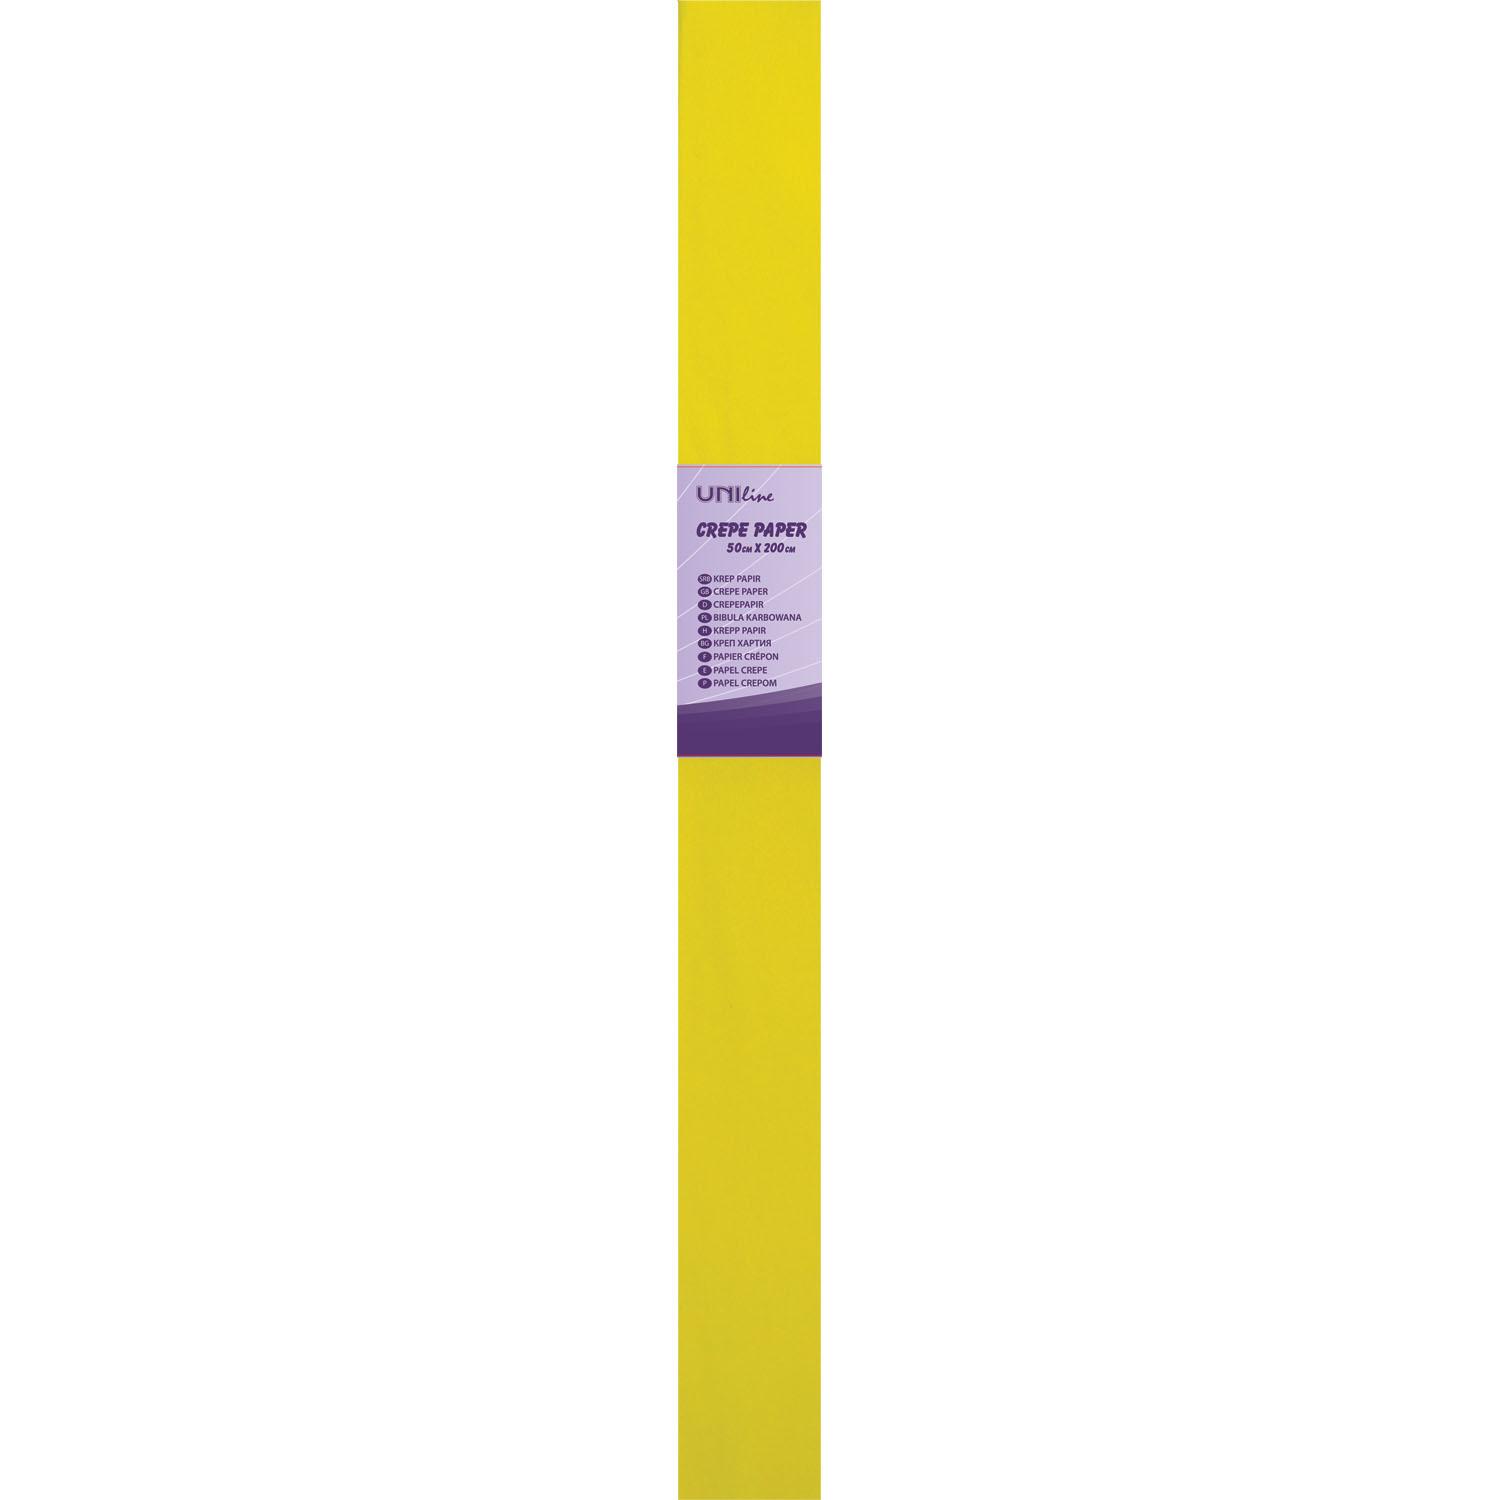 UNILINE Krep papir 50x200 cm UNL-0415 žuti